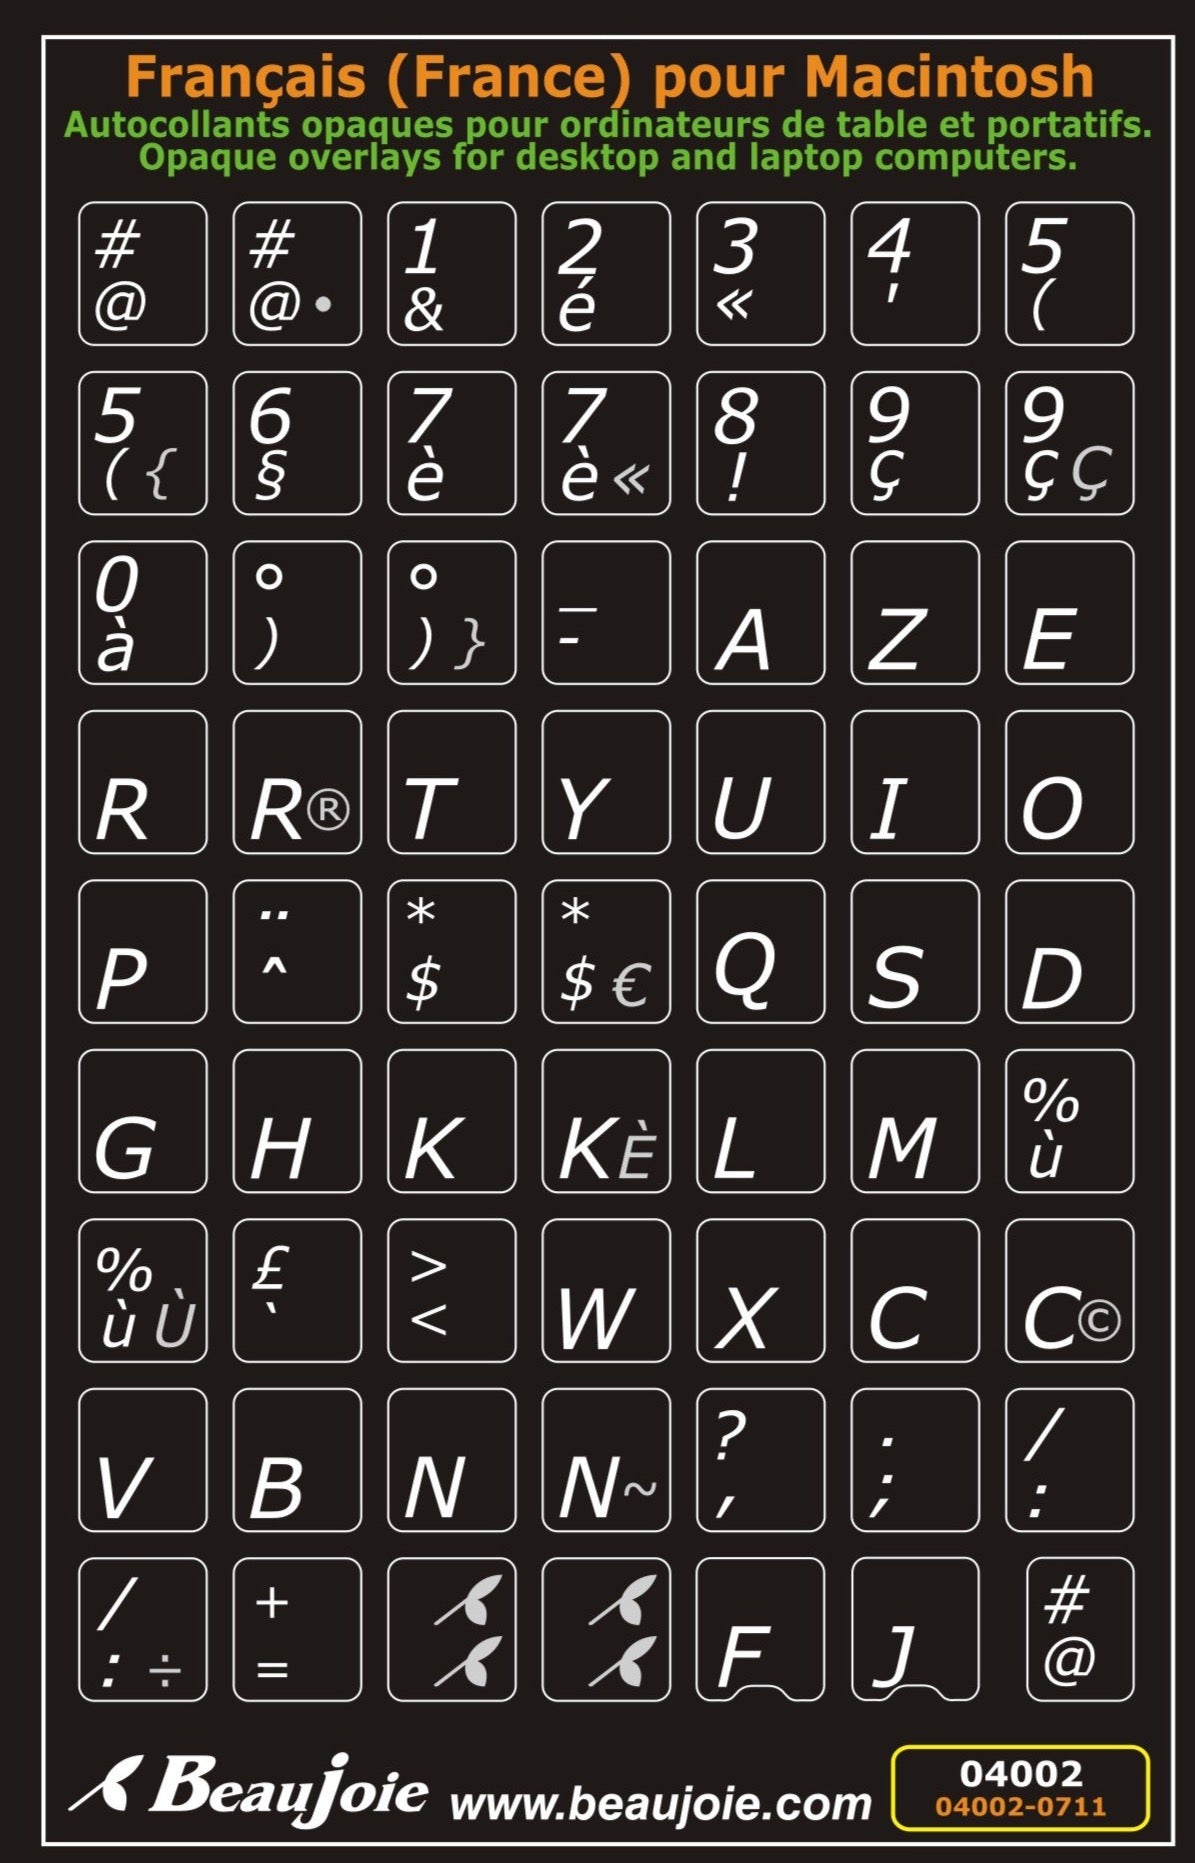 Autocollants lettres majuscules partie centrale clavier Mac français (France) 04002